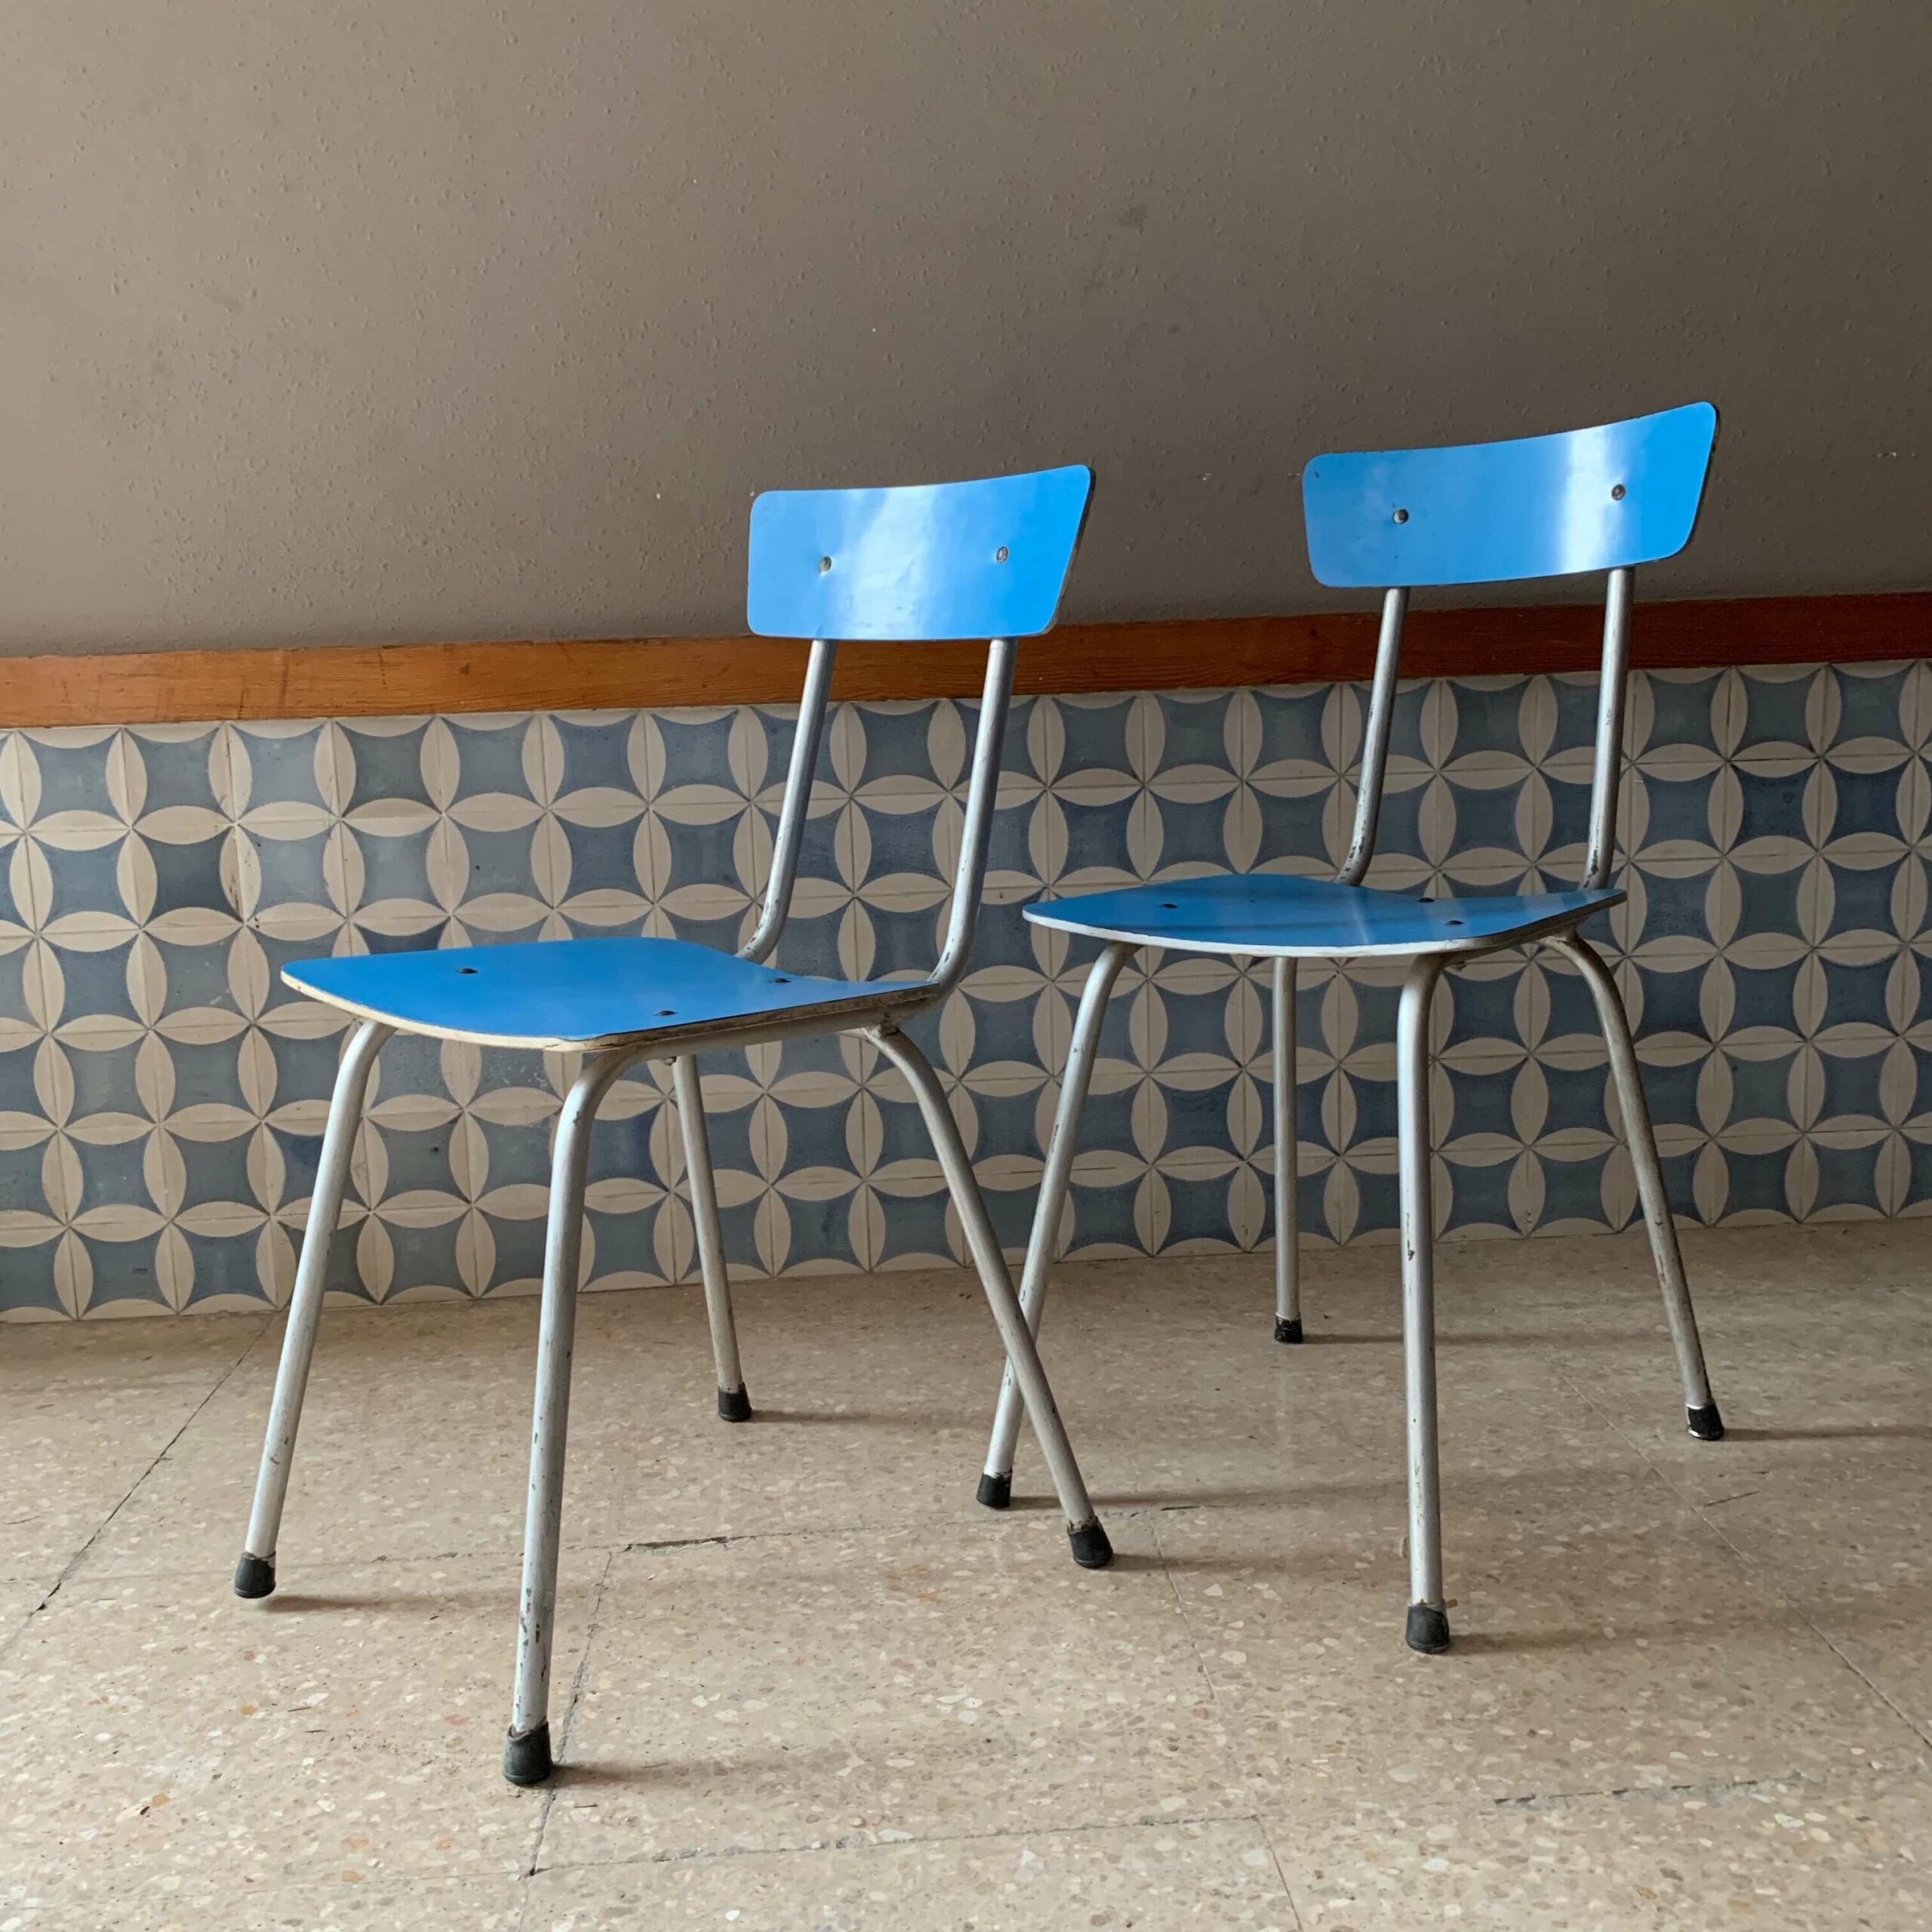 Dos sillas vintage de cocina y railite azul - Reciclandoenelatico